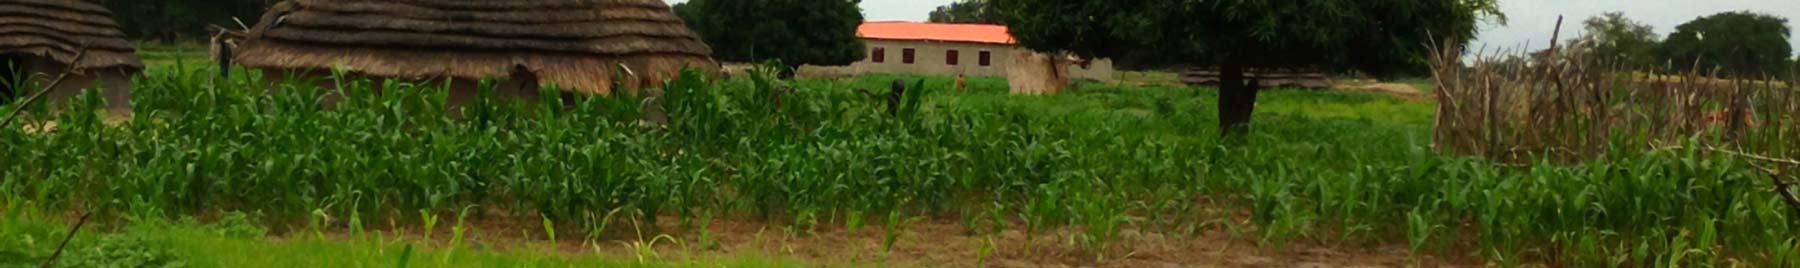 corn field in Sudan